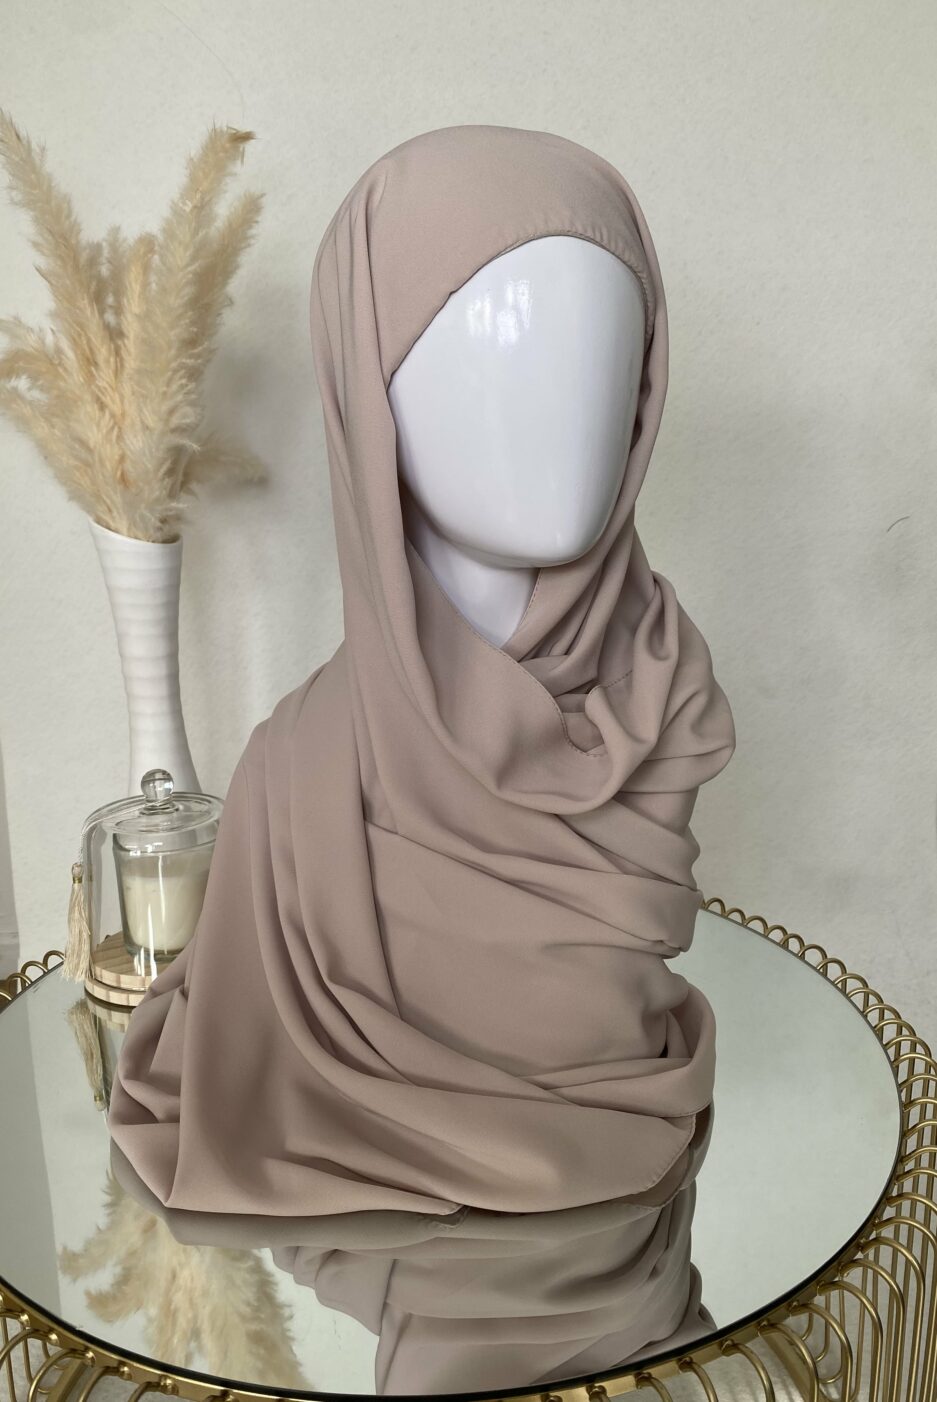 Vente en ligne hijab beige à enfiler avec bonnet, en gros et au détail voile soie de médine de bonne qualité 100% opaque, long, livraison rapide en 24H Nouveau hijab en soie de médine à enfilé avec bonnet intégrer, Cendrijab est situé dans le nord de la France